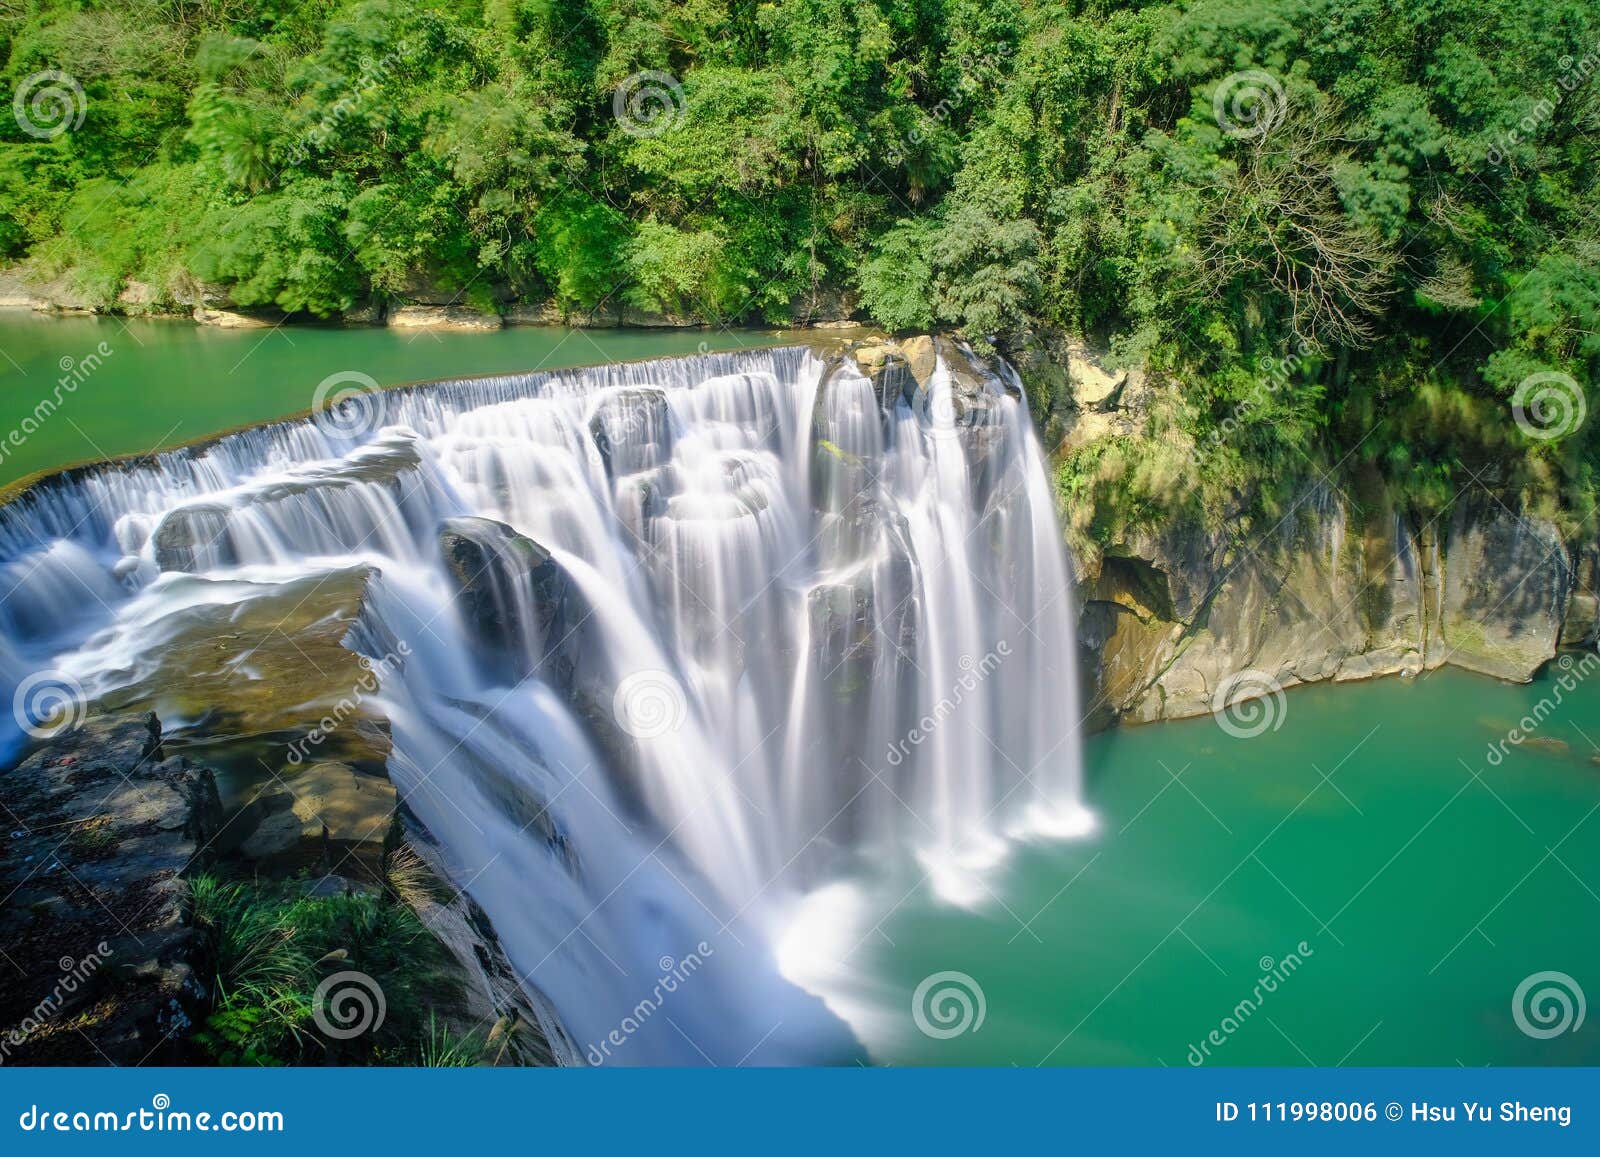 Shifen Waterfall - Famous Nature of Taiwan, Shot in Pingxi District, Taipei, Stock Photo - Image pingxi, discovery: 111998006